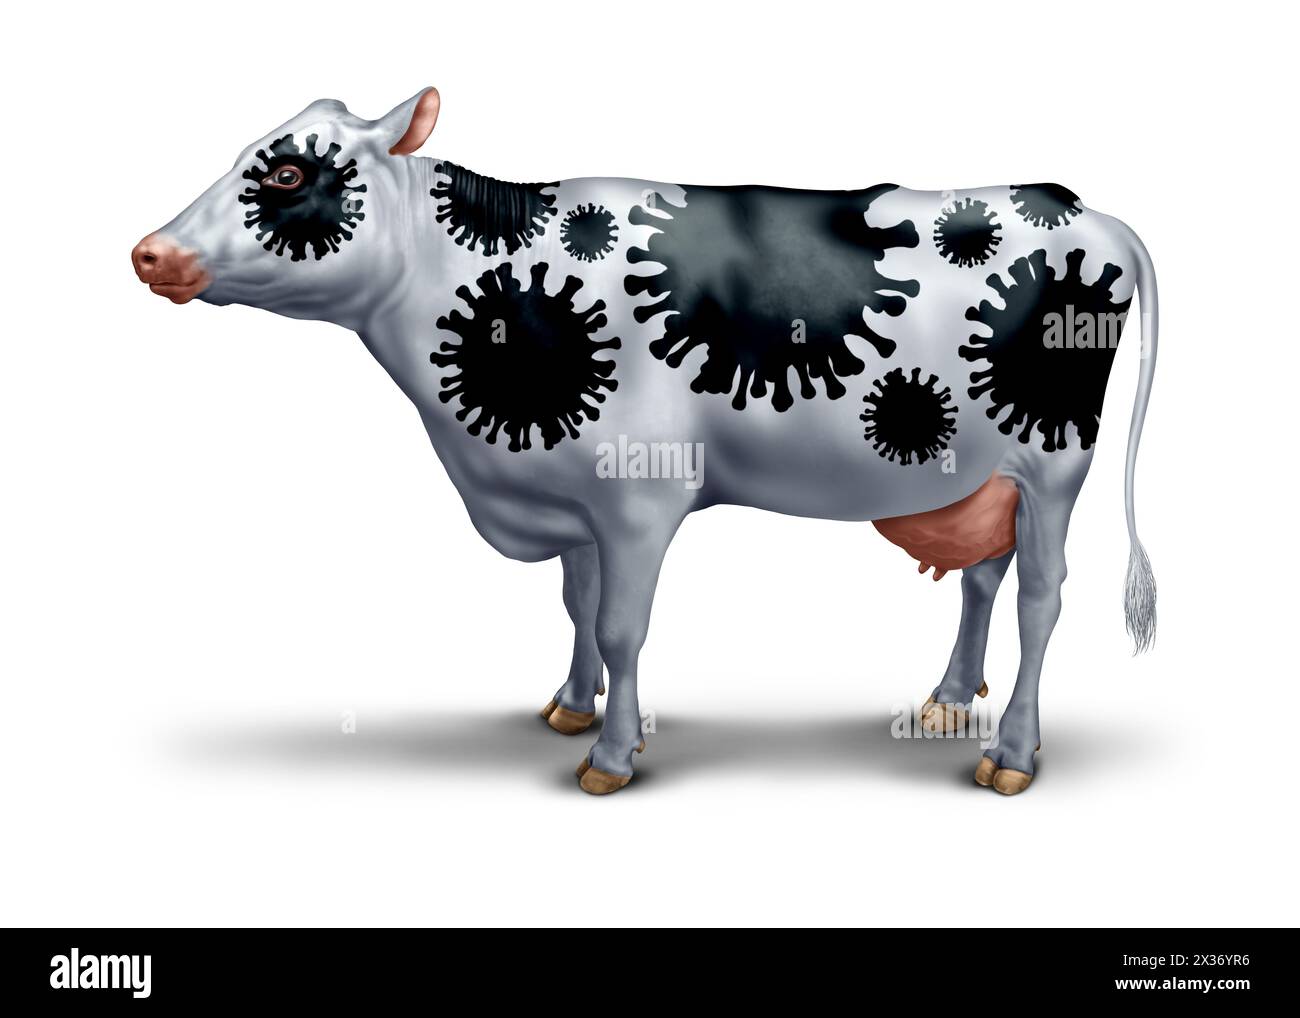 Éclosion du virus de la vache en tant que symbole du coronavirus bovin en tant que symbole de pathologie agricole ou les effets de la grippe aviaire ou aviaire en tant que préoccupation de santé publique. Banque D'Images